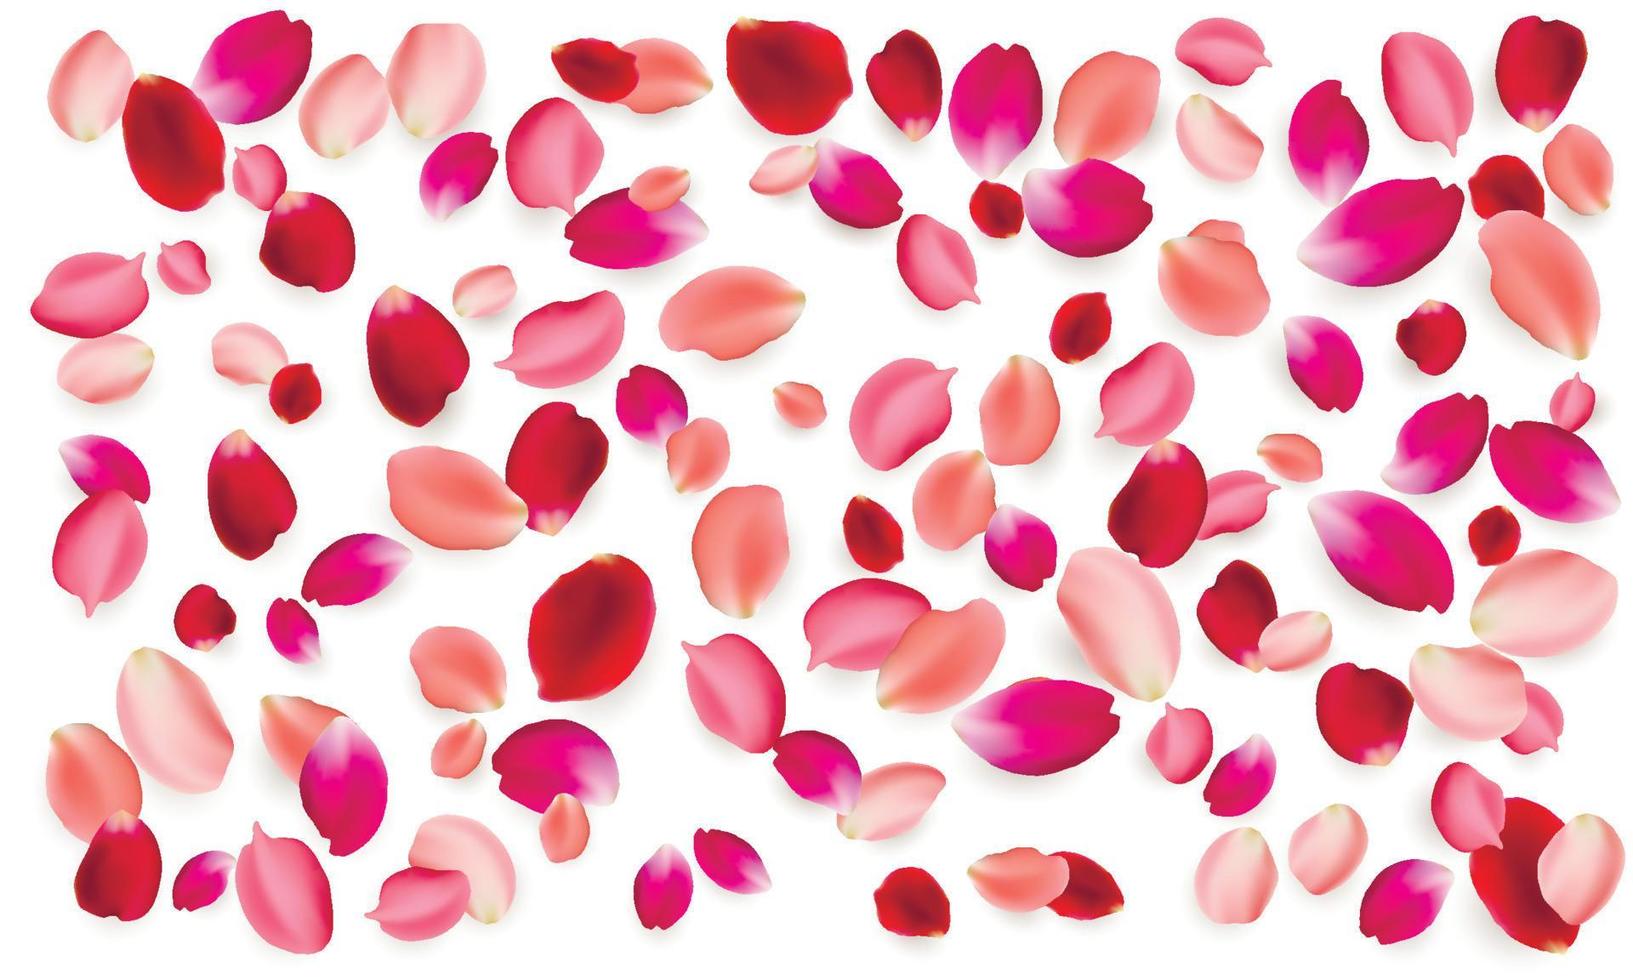 ensemble d'éléments vectoriels réalistes de pétales de rose. pétales rouges et roses de fleur de rose vecteur